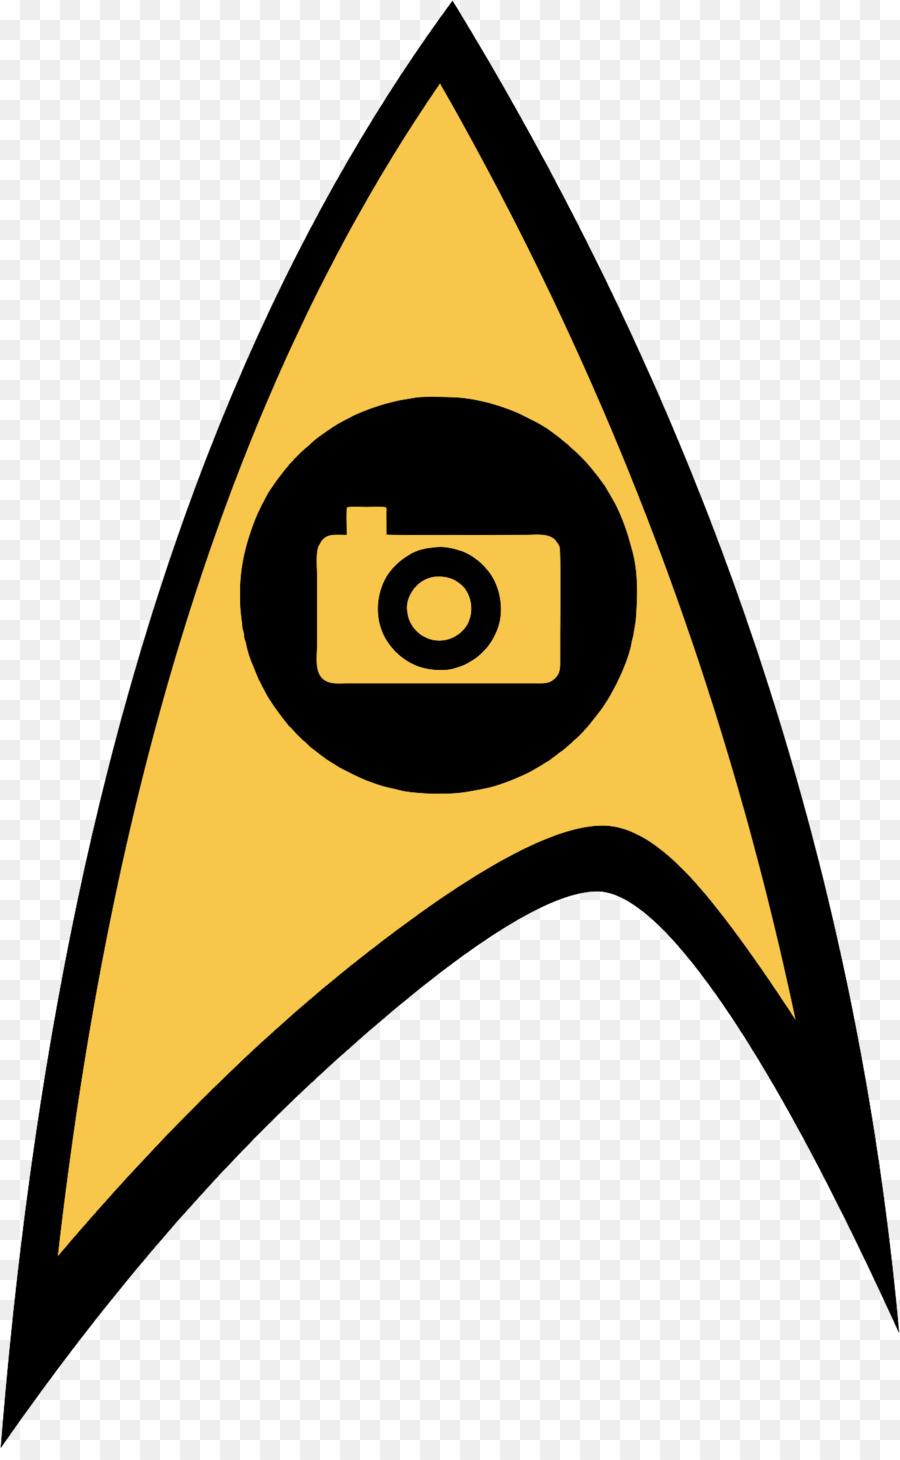 Star Trek Starship Enterprise Clip art - others png download - 1368*2202 - Free Transparent Star Trek png Download.